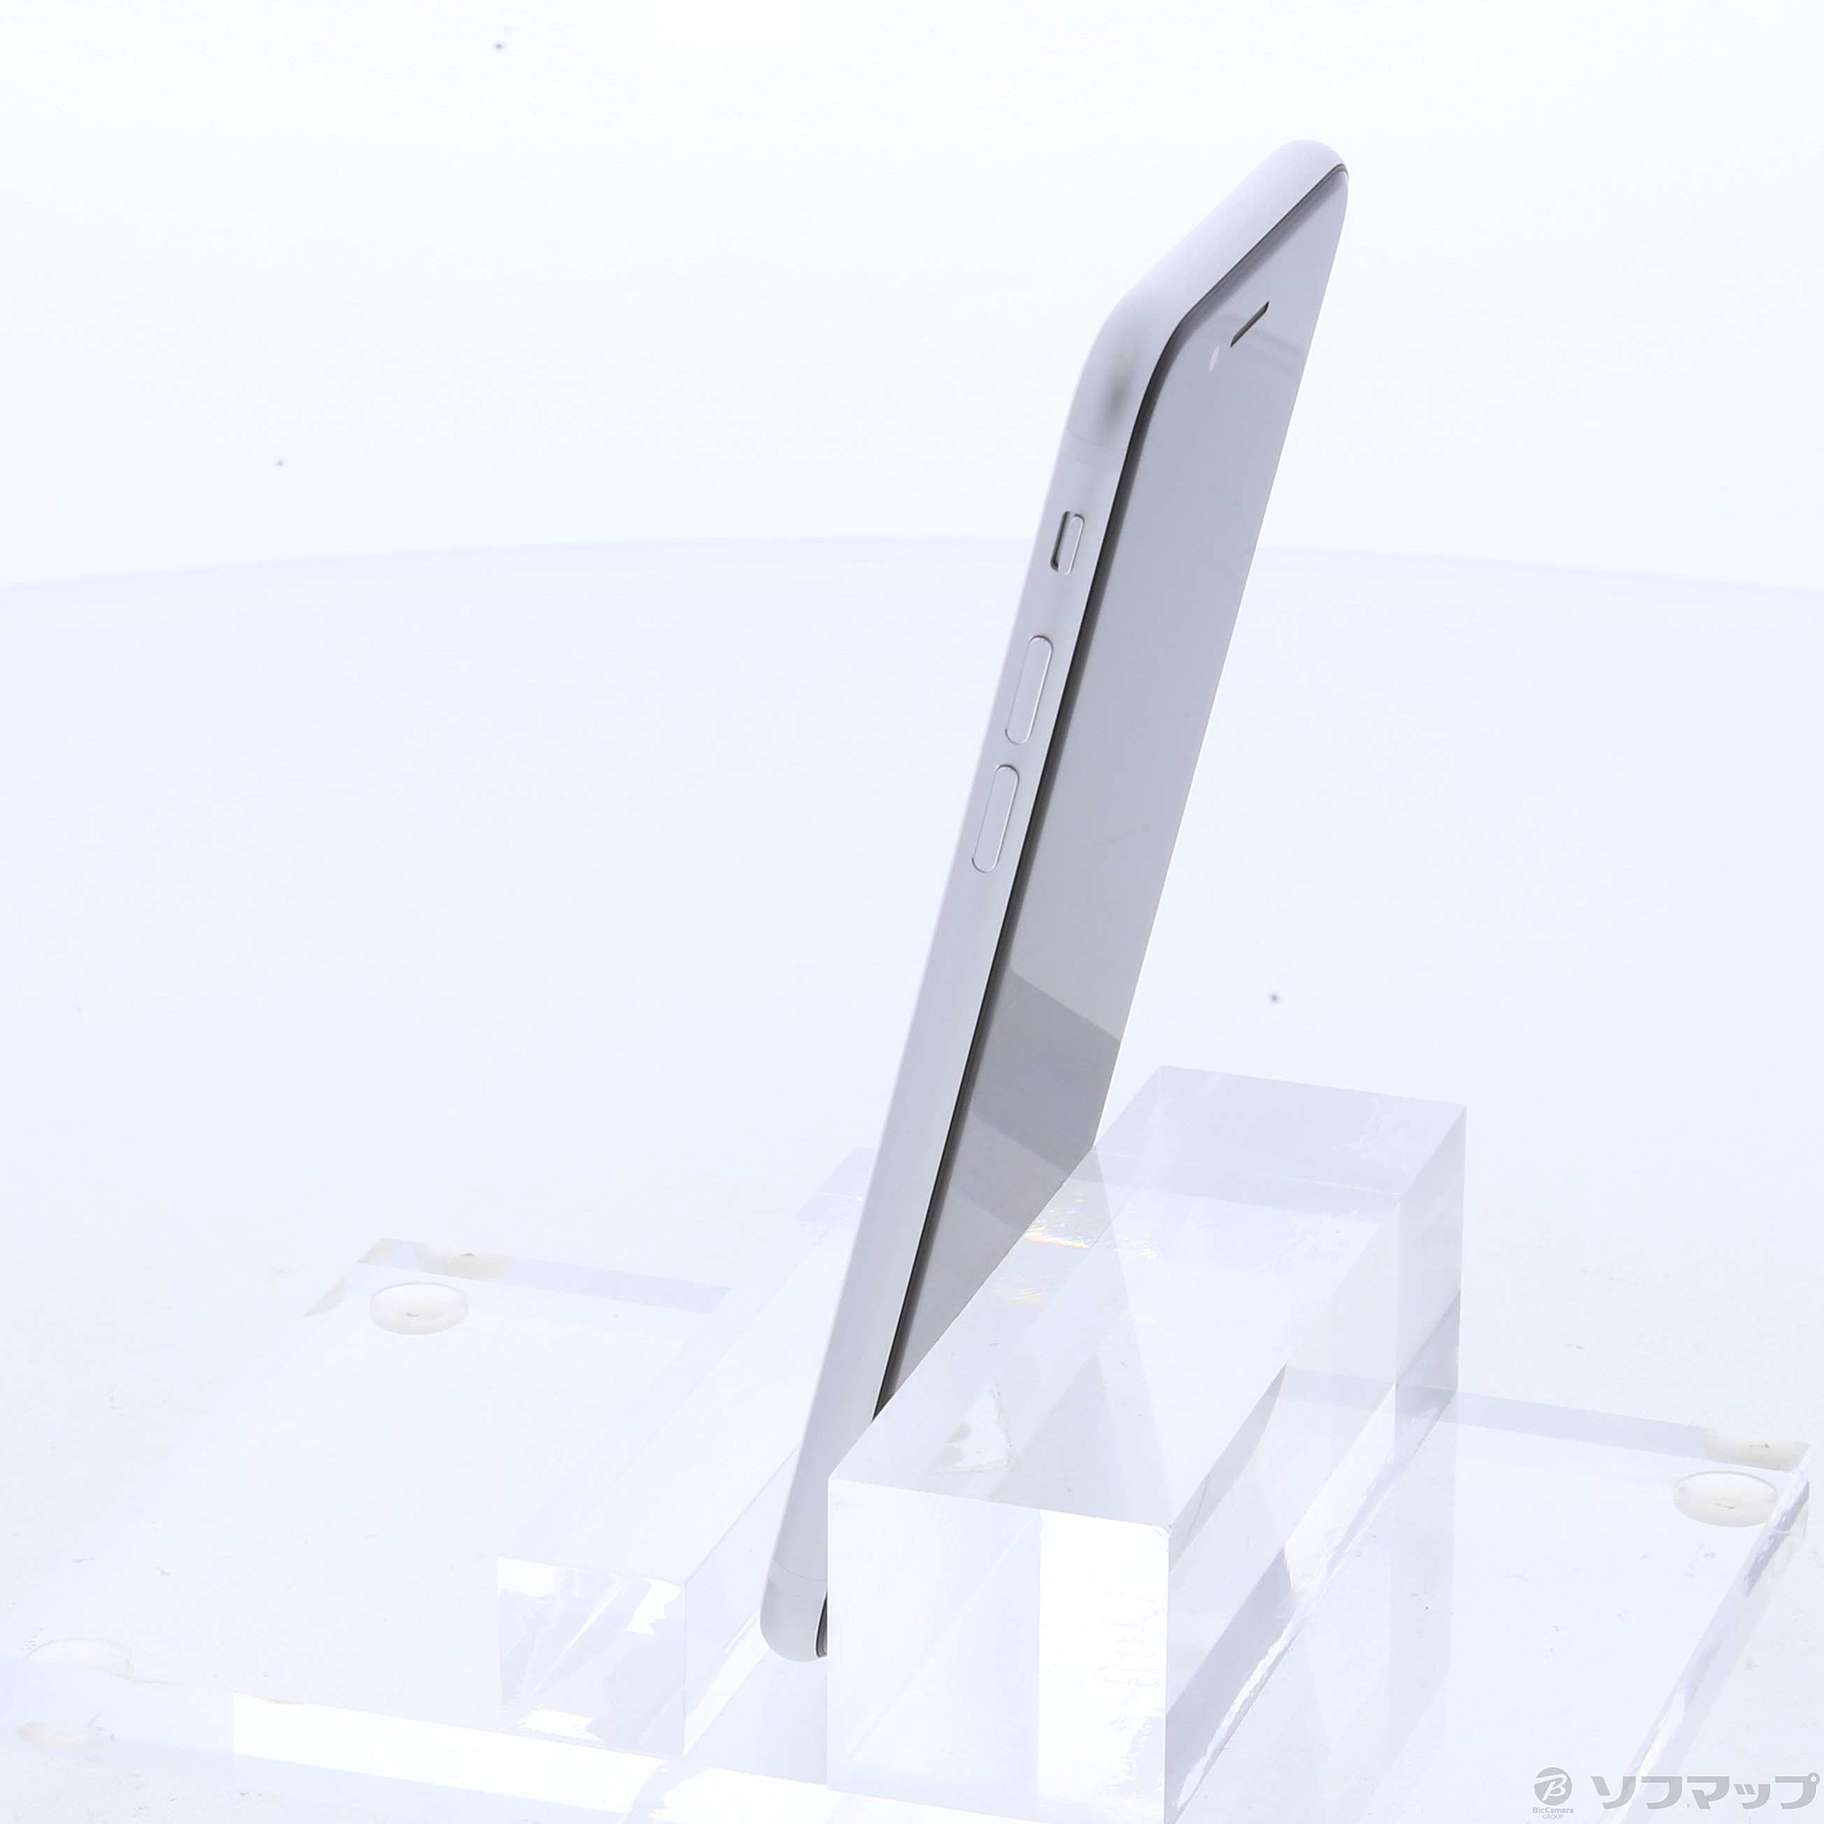 Apple(アップル) iPhone SE 第2世代 64GB ホワイト MHGQ3J／A SIMフリー 〔ネットワーク利用制限△〕〔247-ud〕 